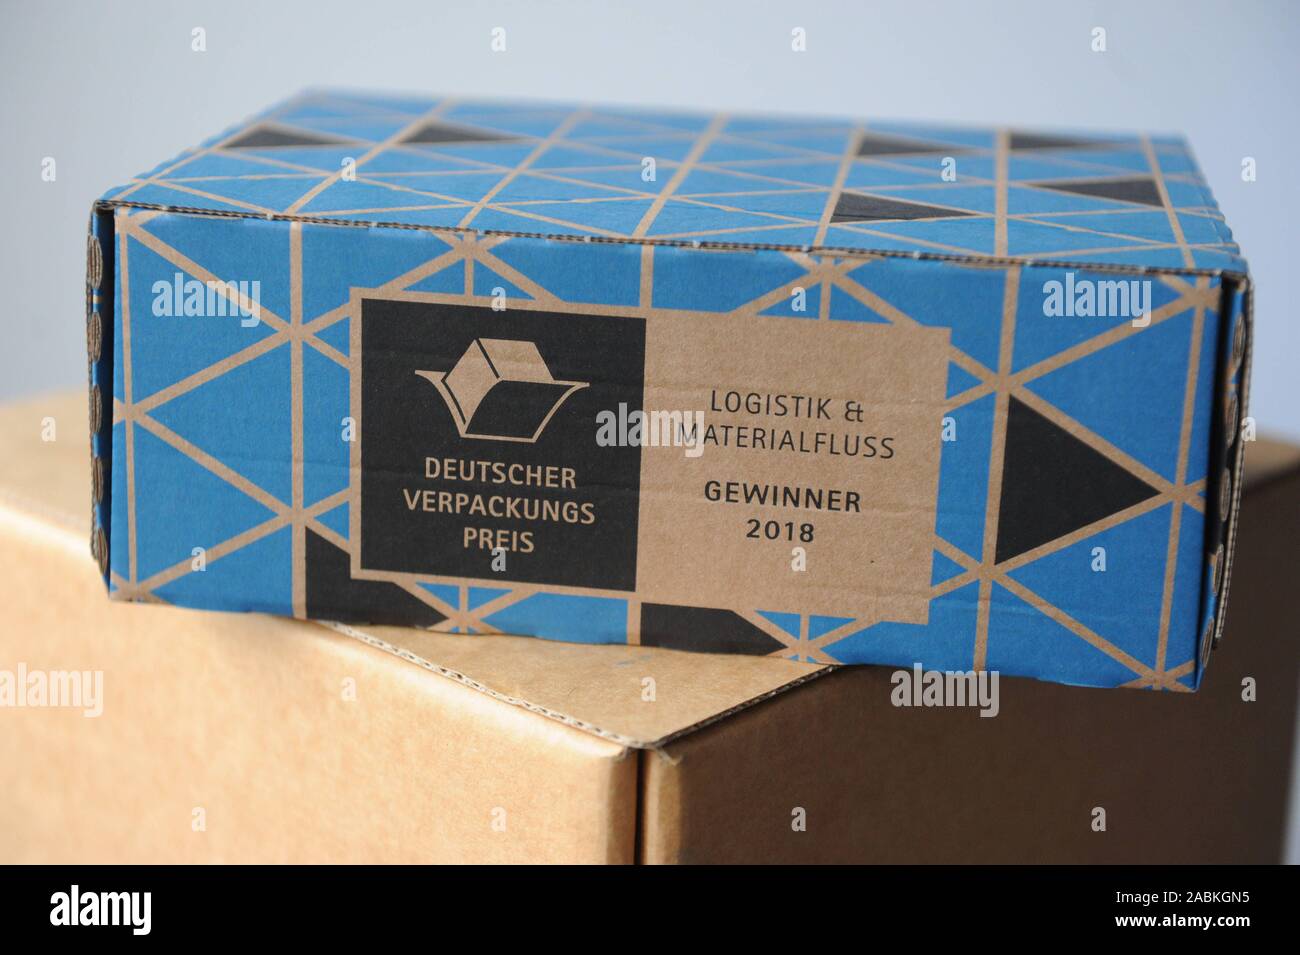 La compañía 'Drei V Verpackungen' mejora y produce envases sostenibles sin plástico el material de relleno. La imagen muestra el "afebox' cartón de embalaje, que ganó el Premio Alemán del Embalaje en el campo de la logística y el flujo de material en 2018. [Traducción automática] Foto de stock